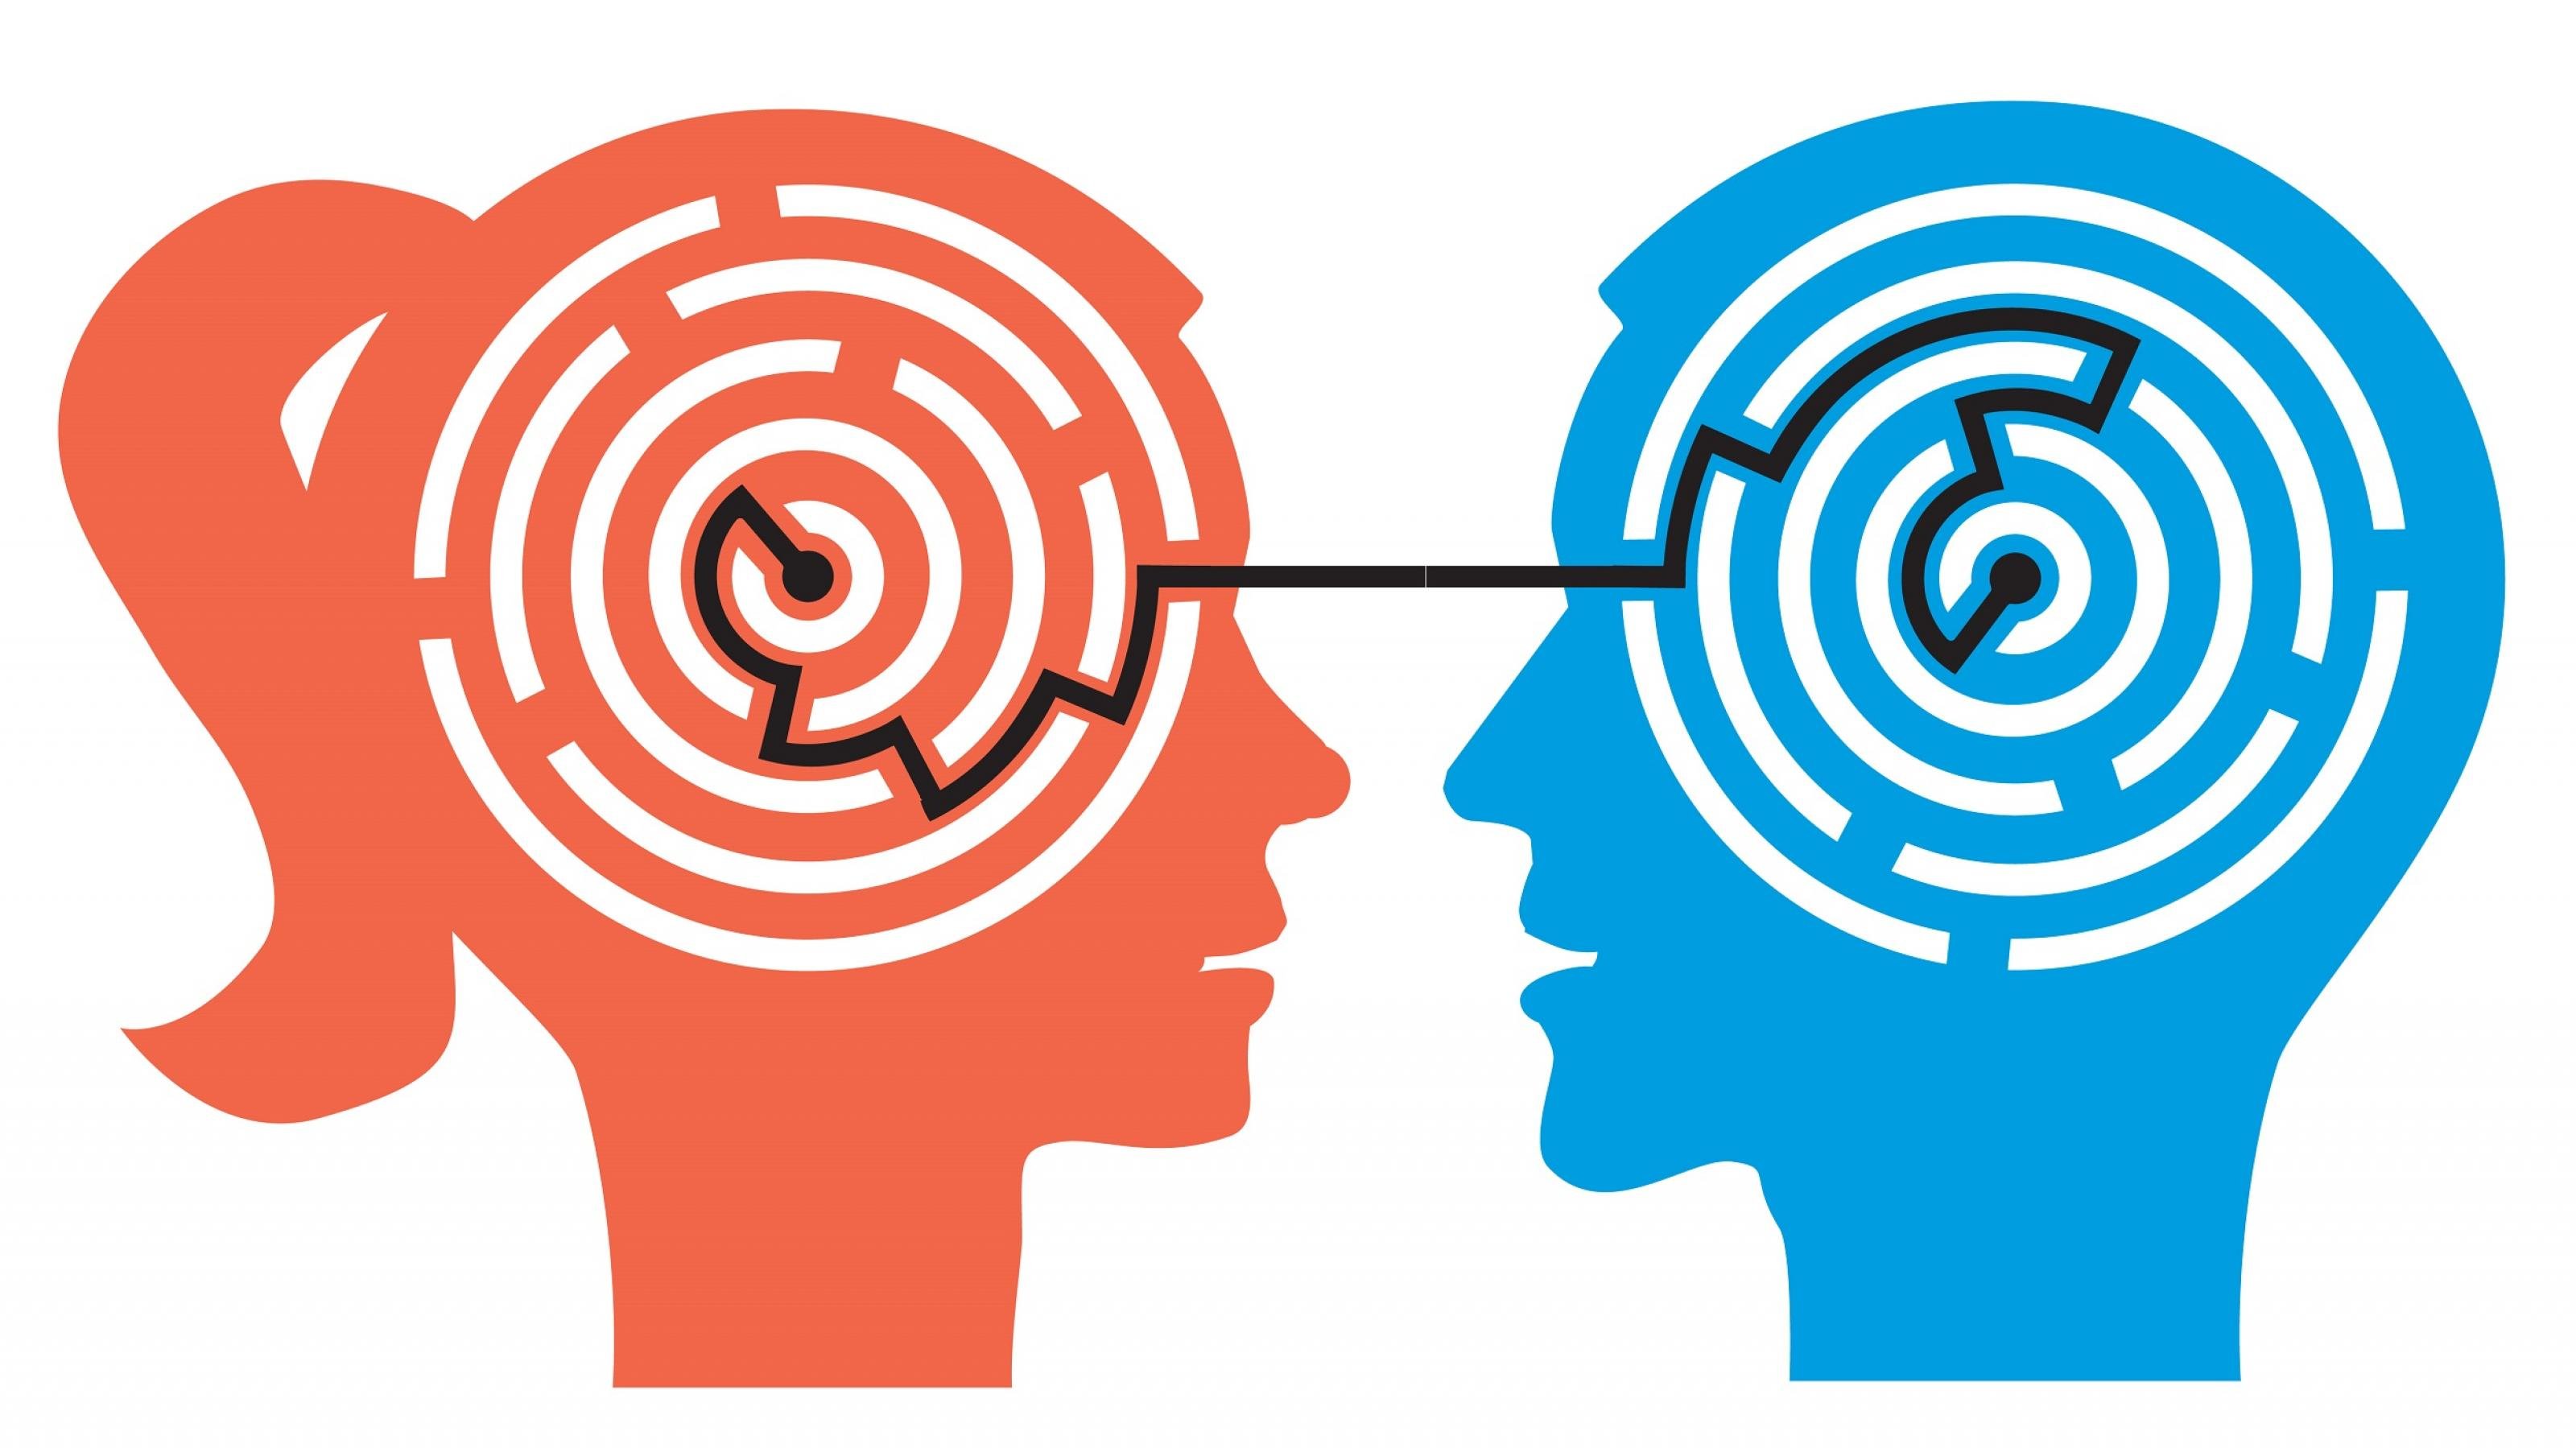 Scherenschnitt-artige Zeichnung eines roten Frauenprofils und eines blauen Männerprofils. Statt der Gehirne haben beide ein Labyrinth im Kopf. Die Labyrinthe sind durch eine schwarze Linie verbunden..